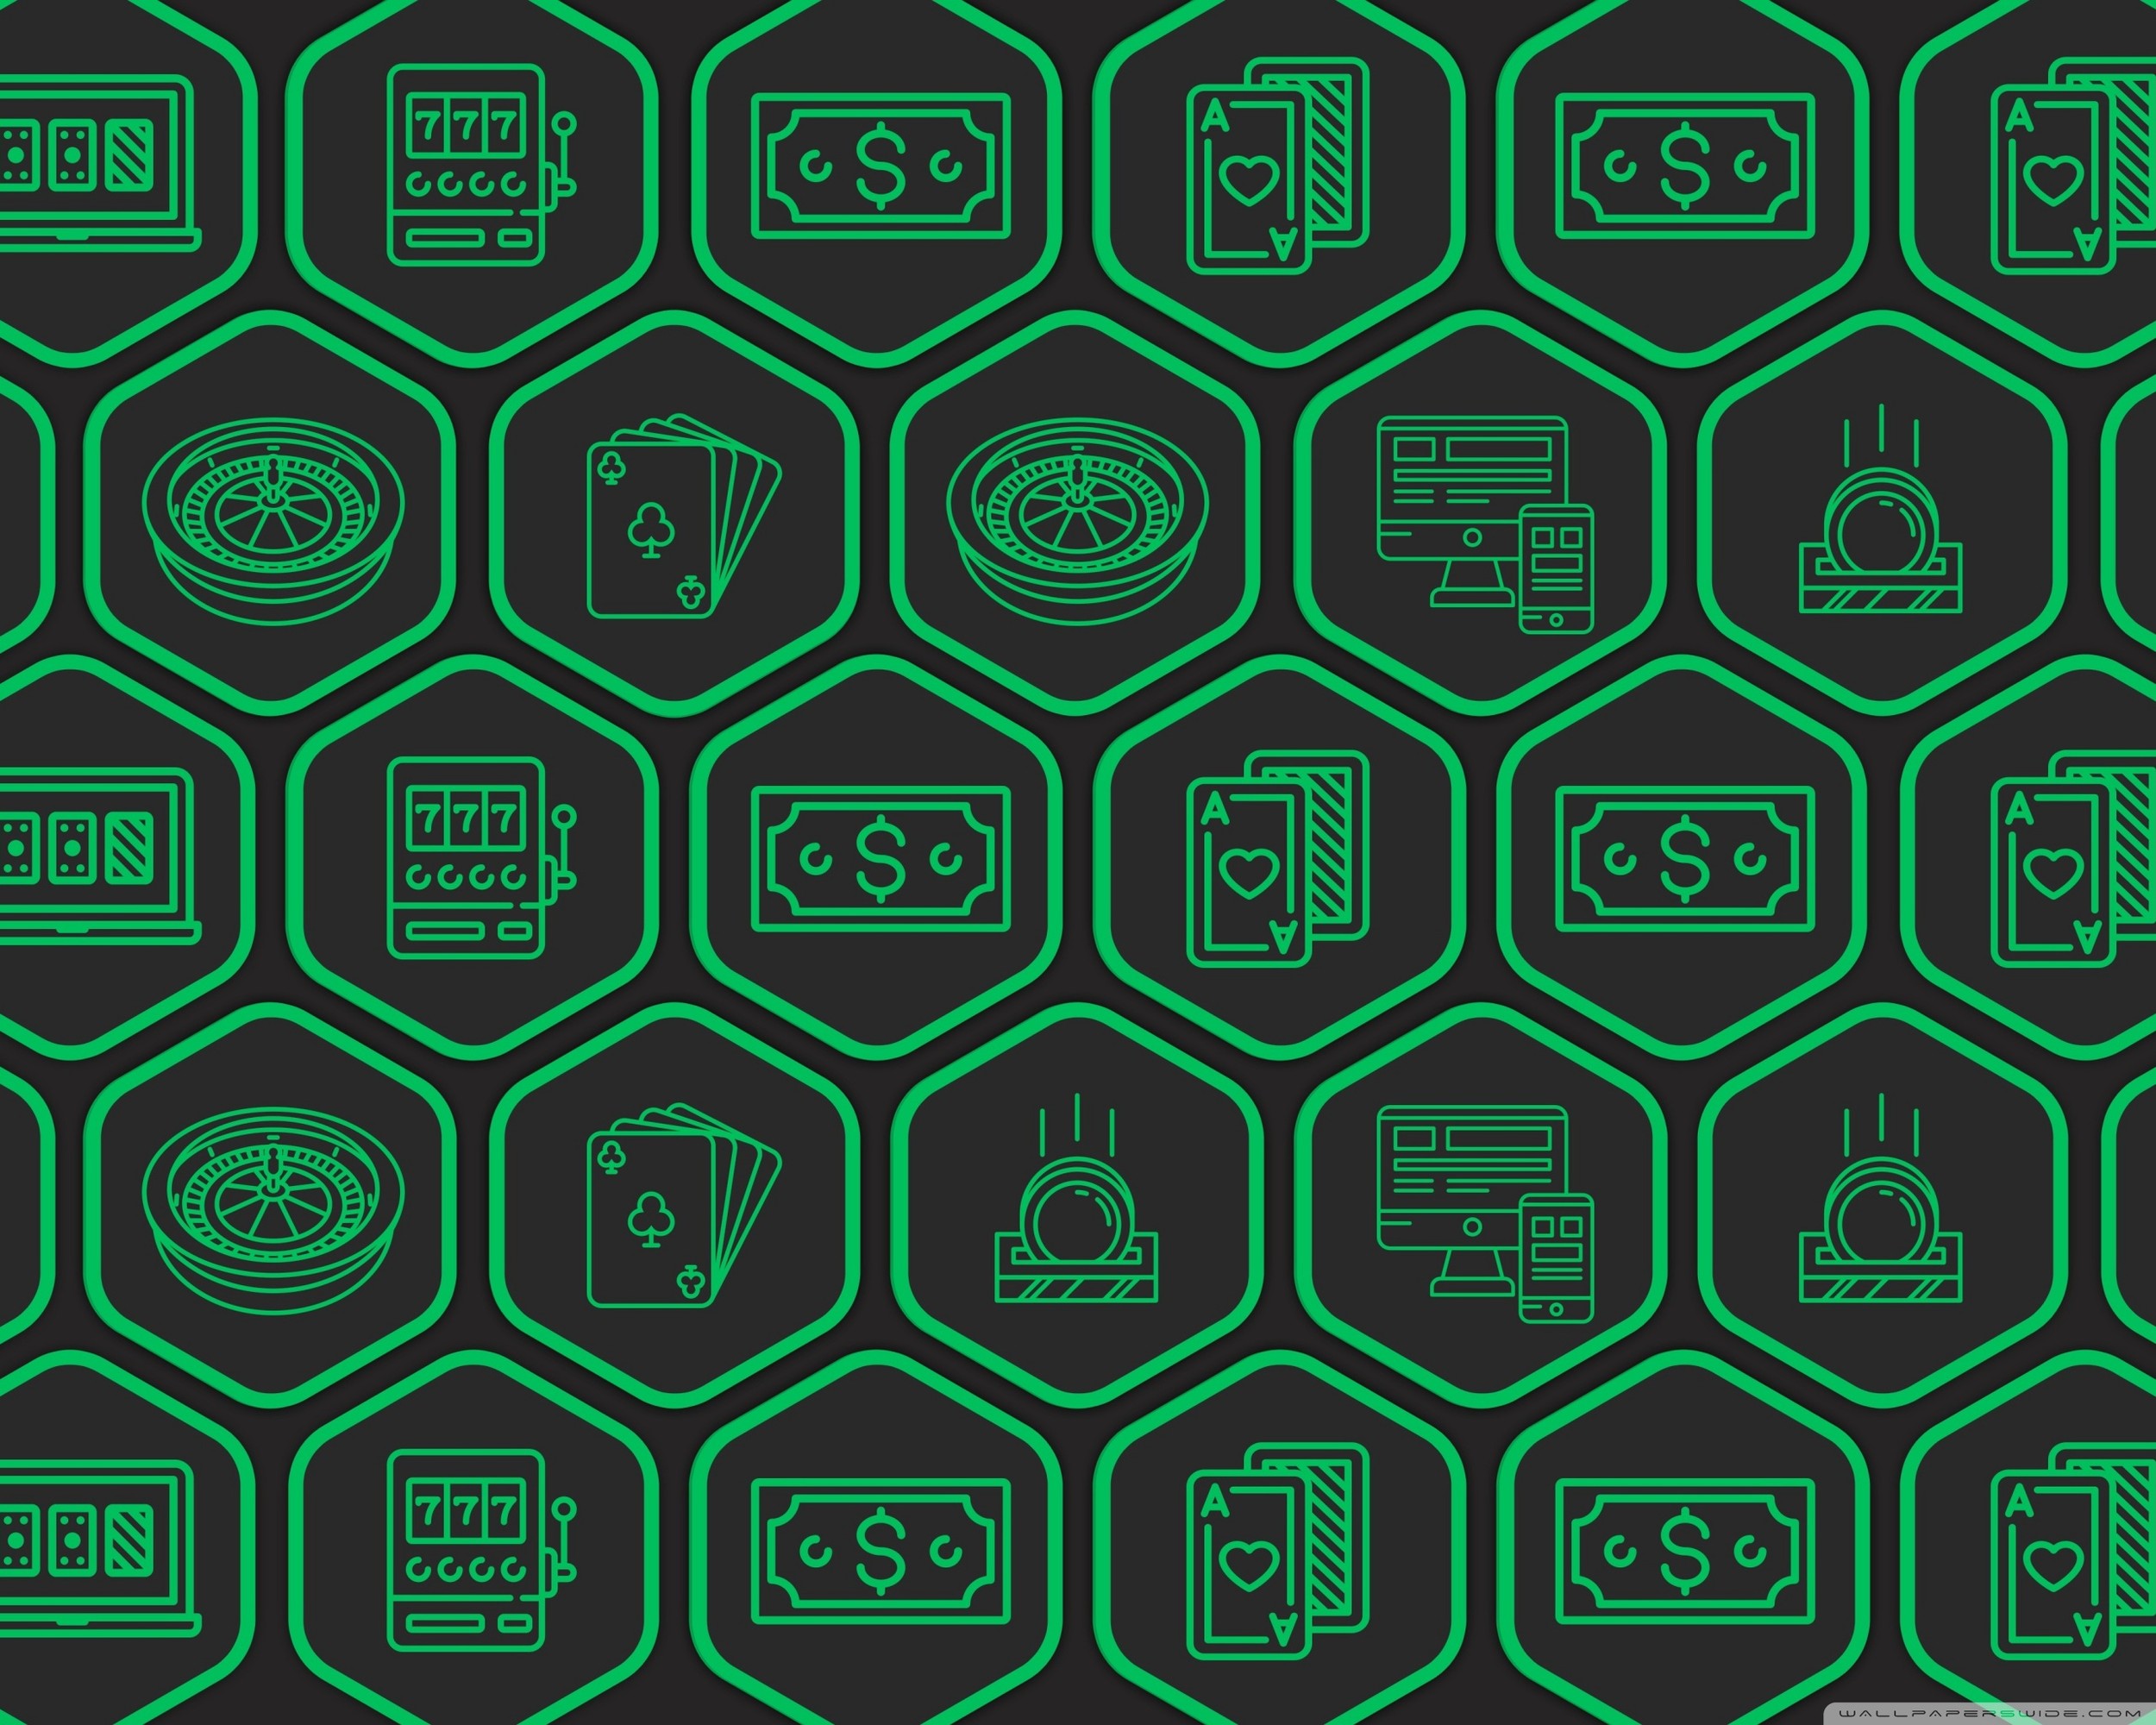 Hexagons With Casino Games Phone Wallpaper By Asiashari